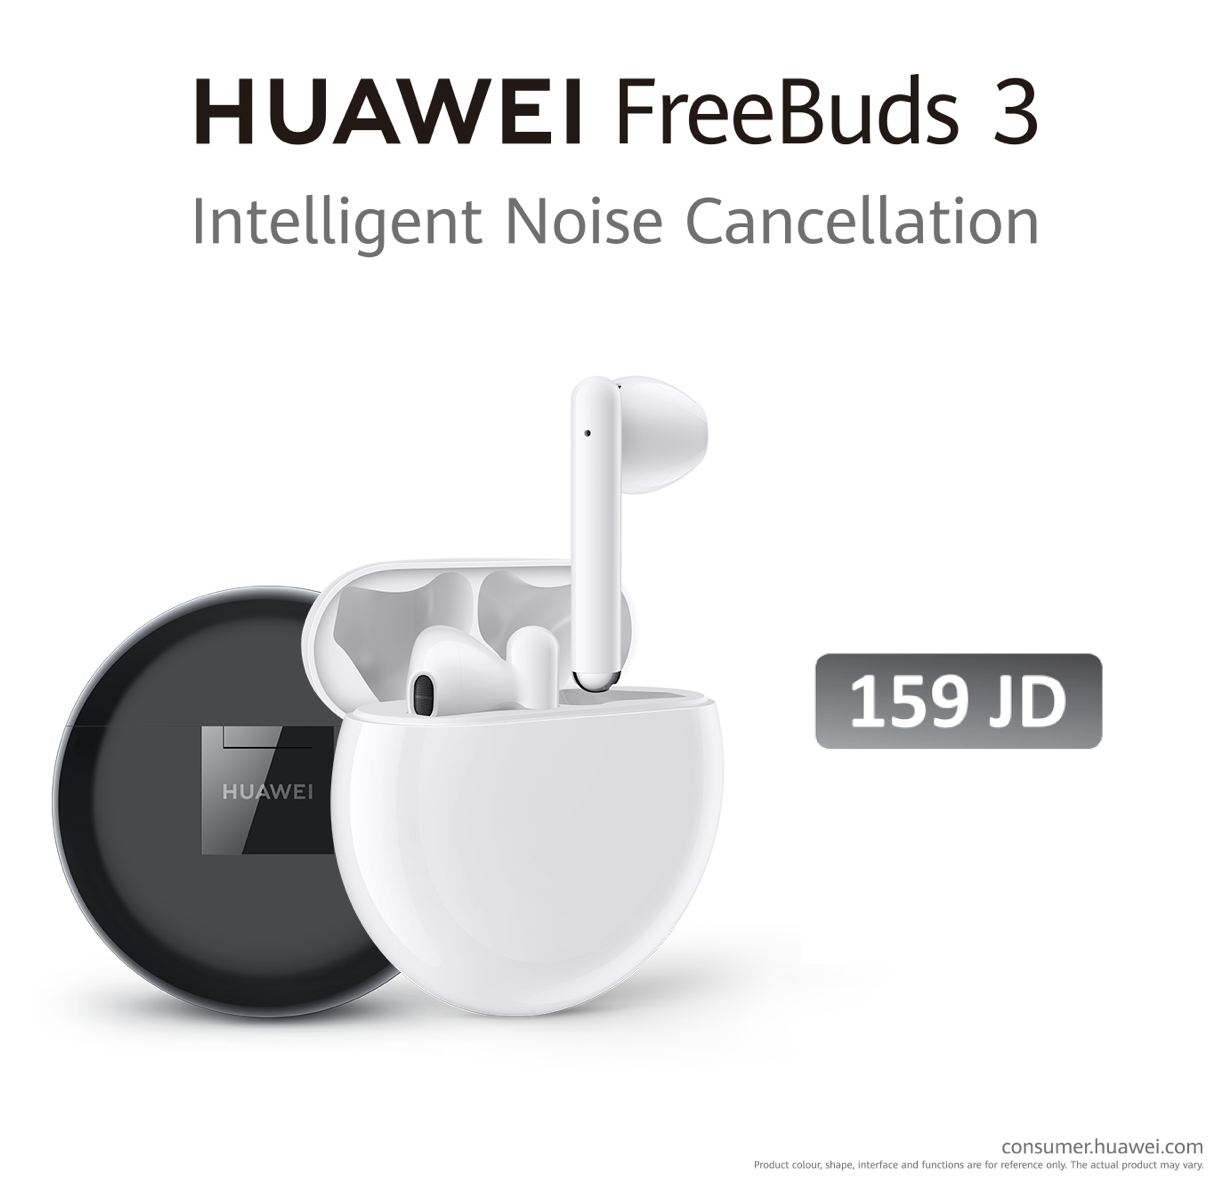 أربع مزايا فريدة تجعل Huawei FreeBuds 3 أكثر من مجرد سماعات! – جريدة الغد